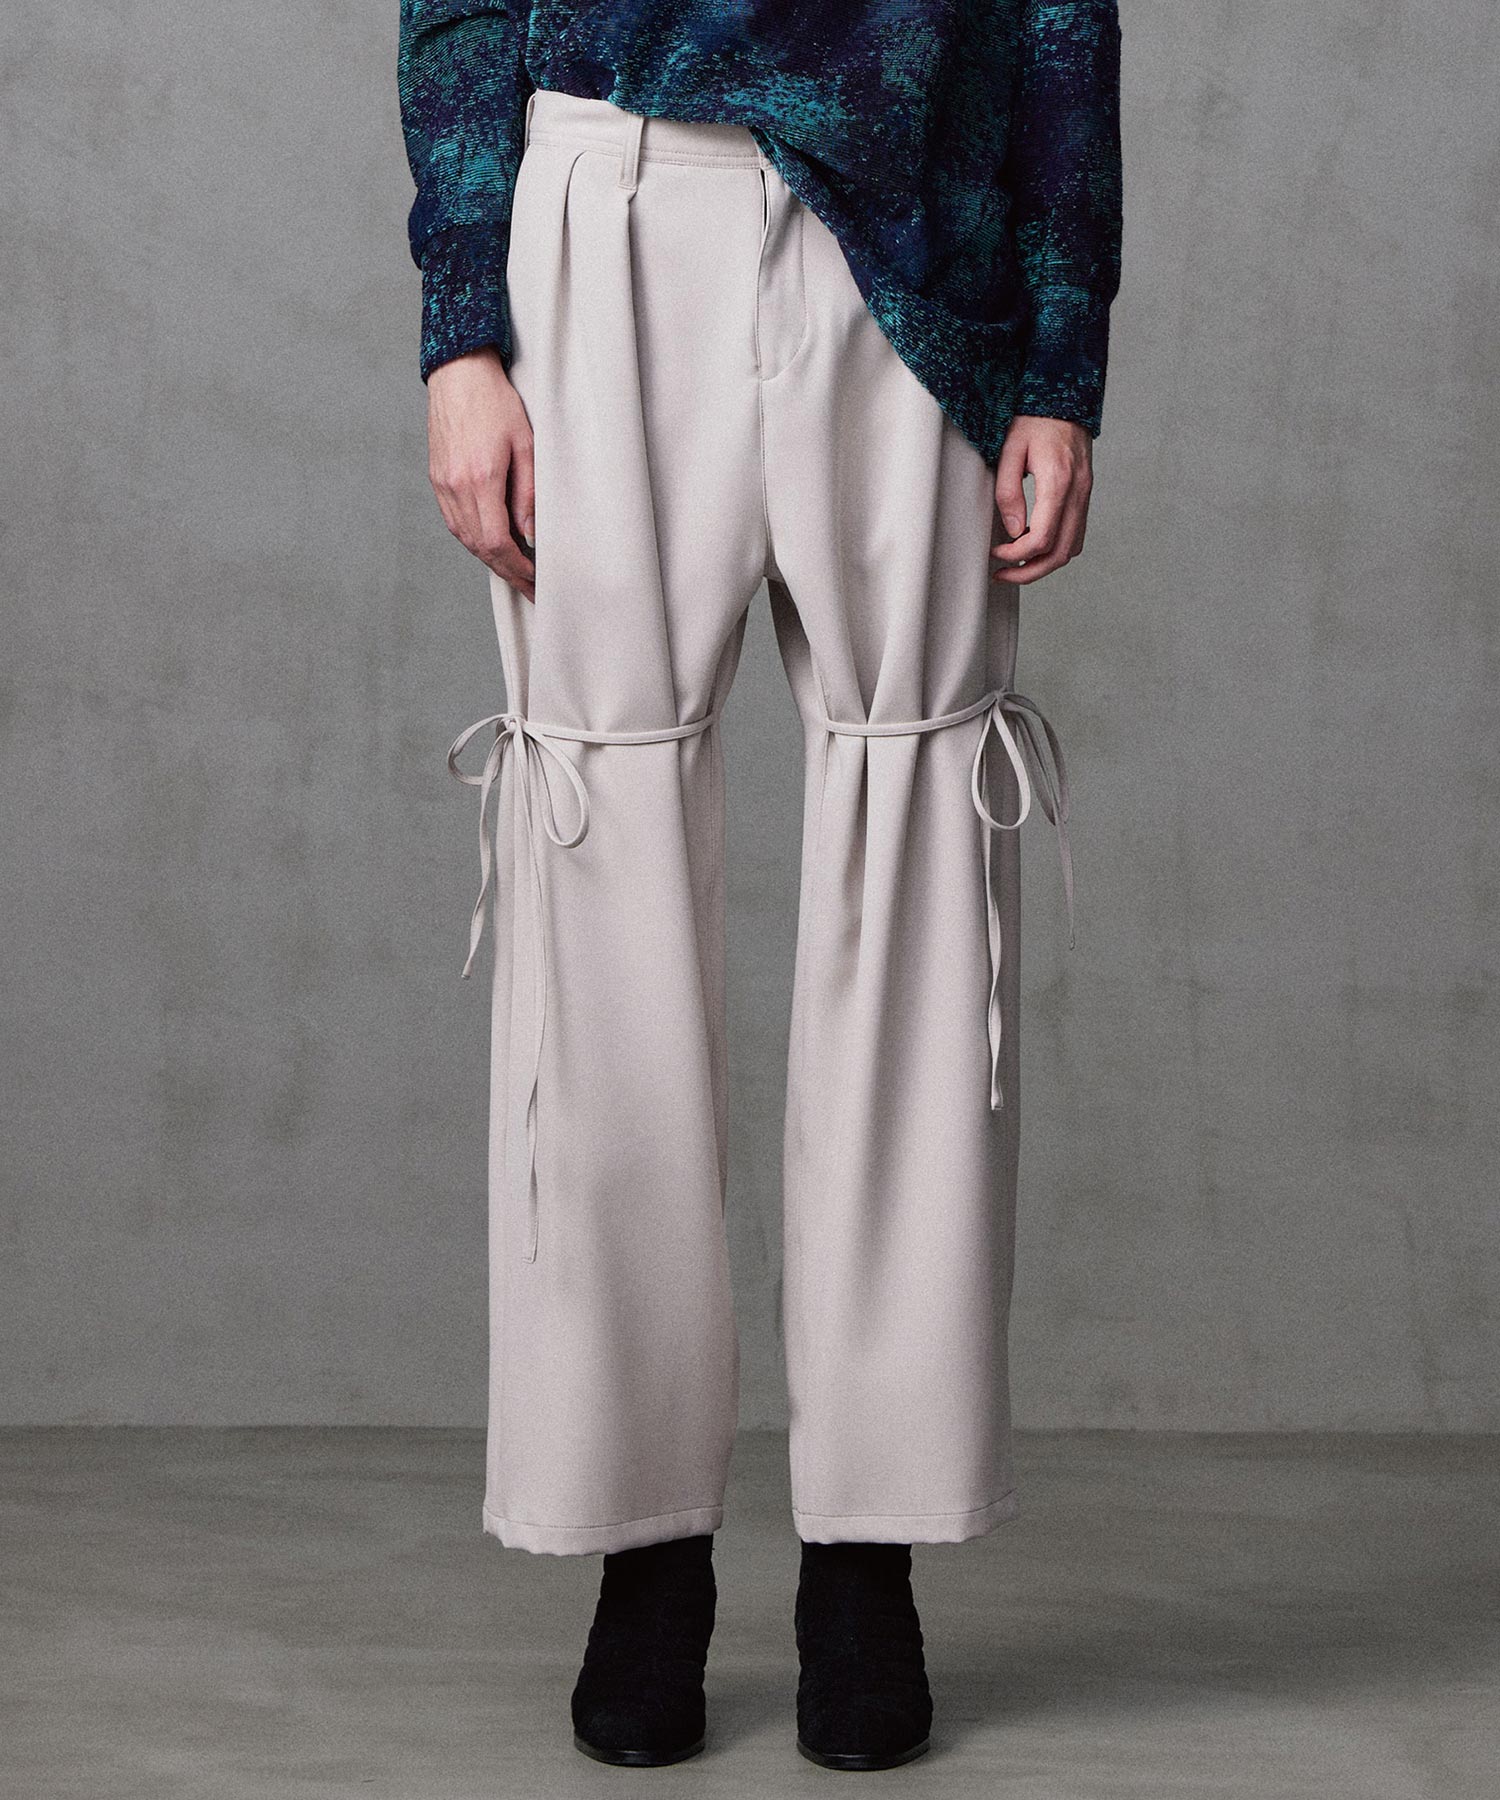 低価在庫あShareef bicolor paint patterned slacks パンツ